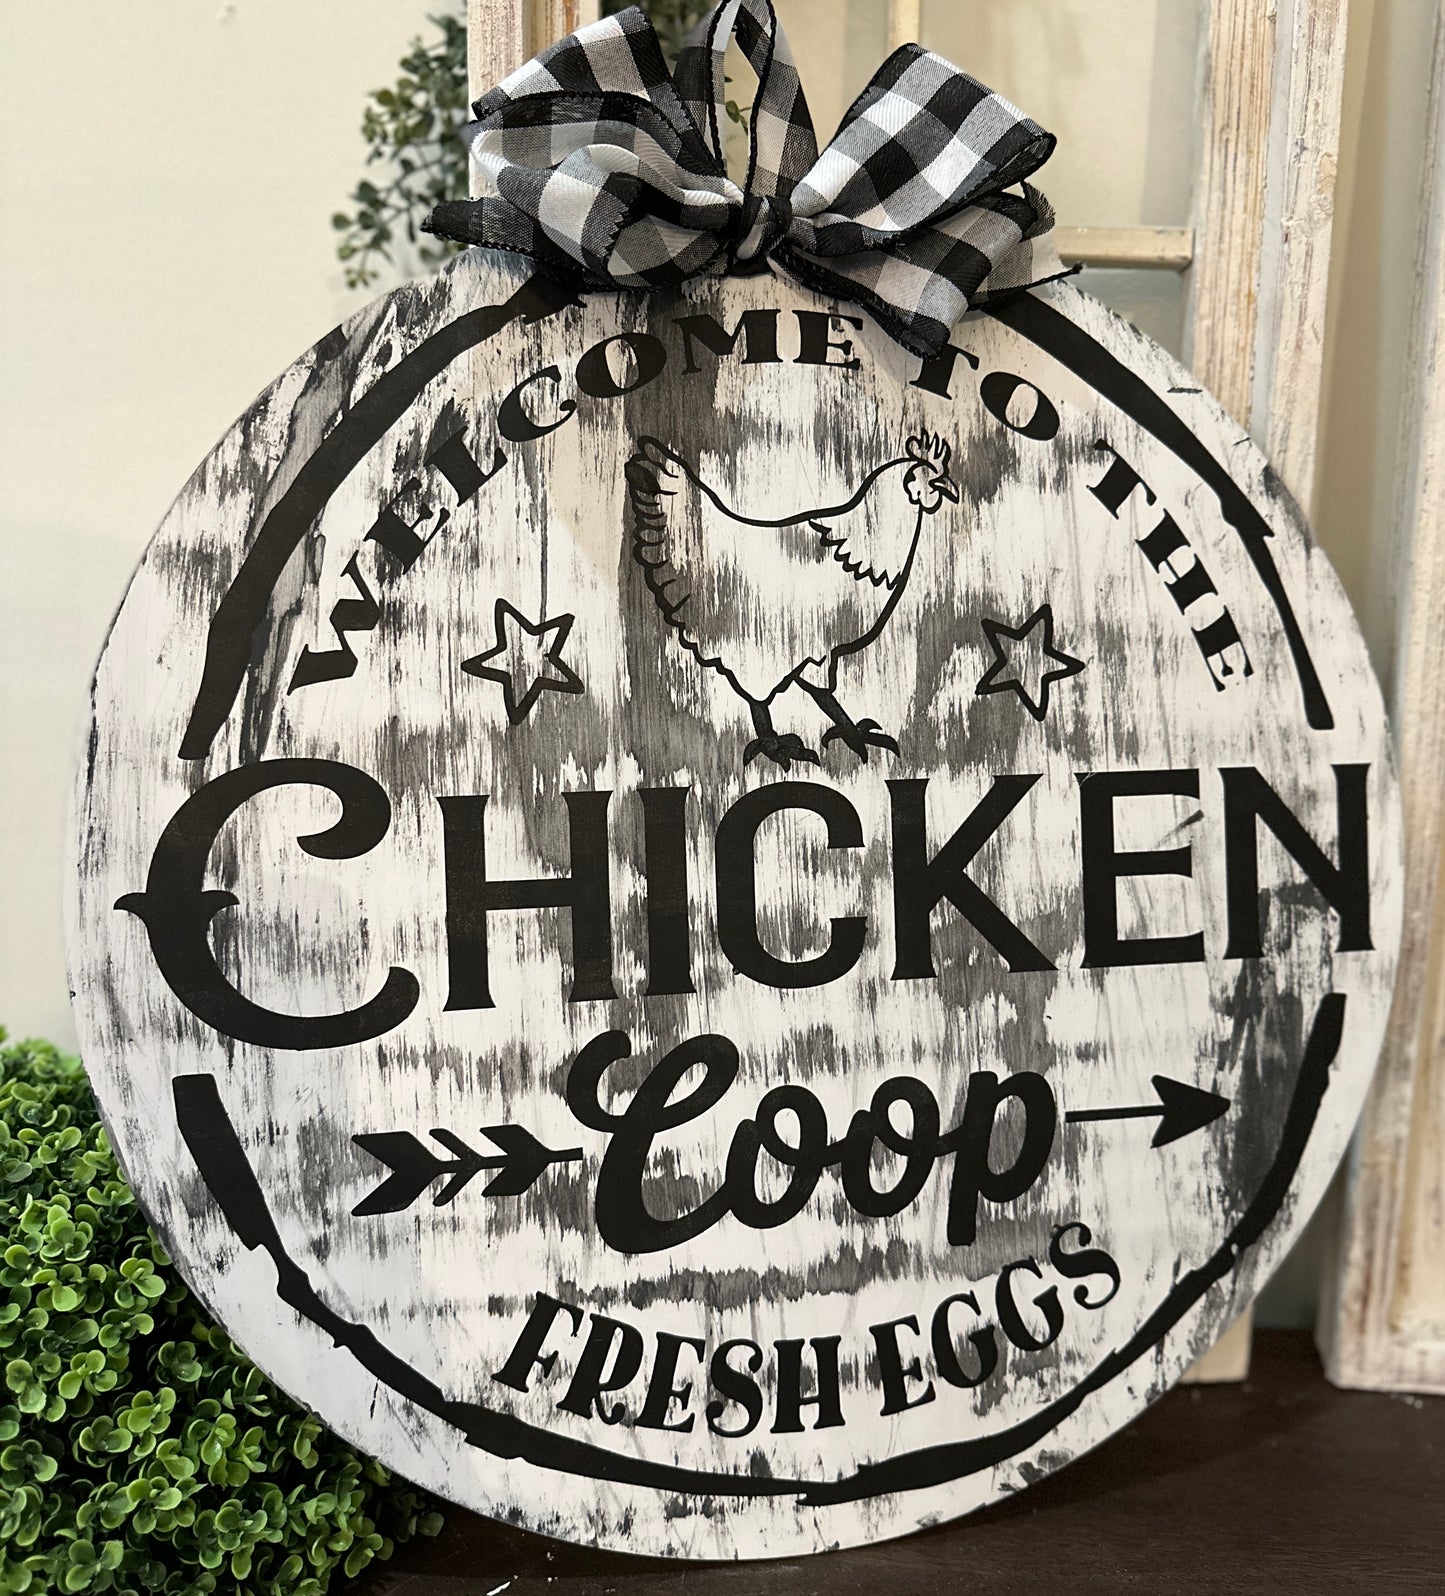 Welcome to the Chicken Coop Door Hanger Design P0498